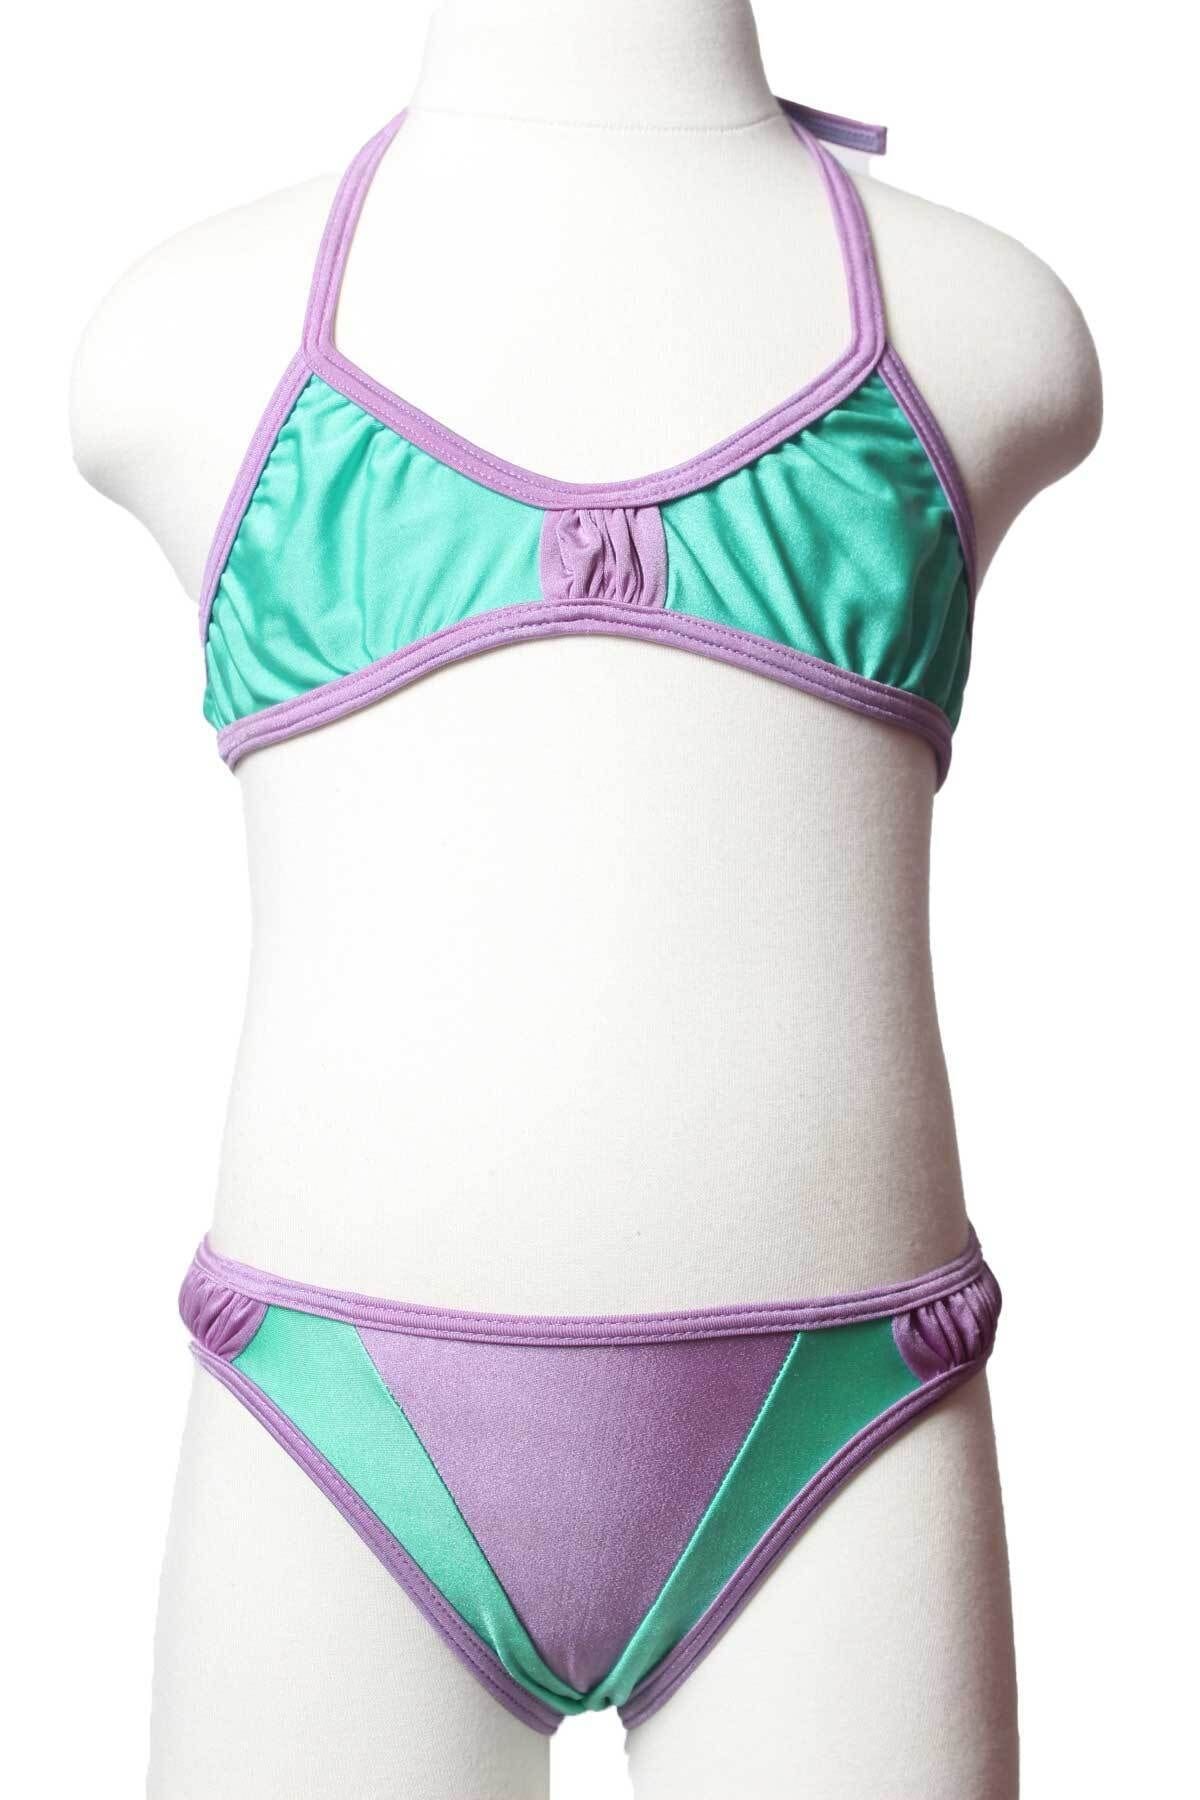 Sude Ayl Kız Çocuk Yeşil Üçgen Model Boyundan Bağlamalı Alt Üst Düz Bikini Takım 95